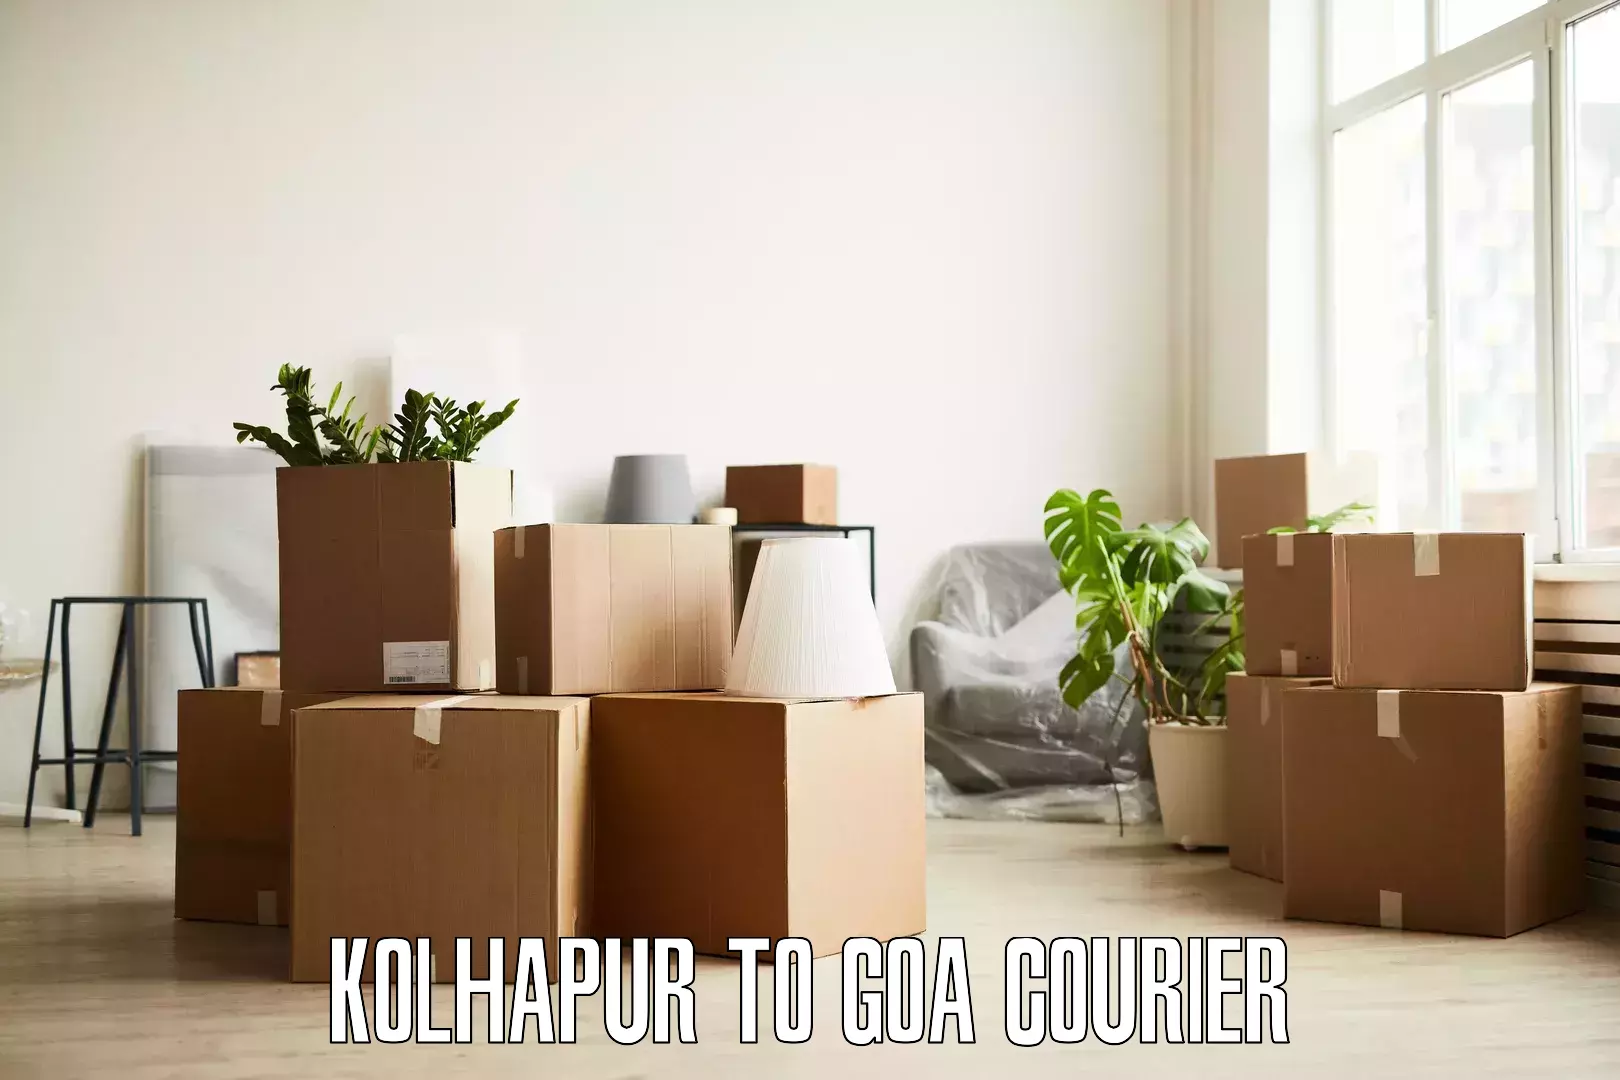 Skilled furniture transport Kolhapur to IIT Goa